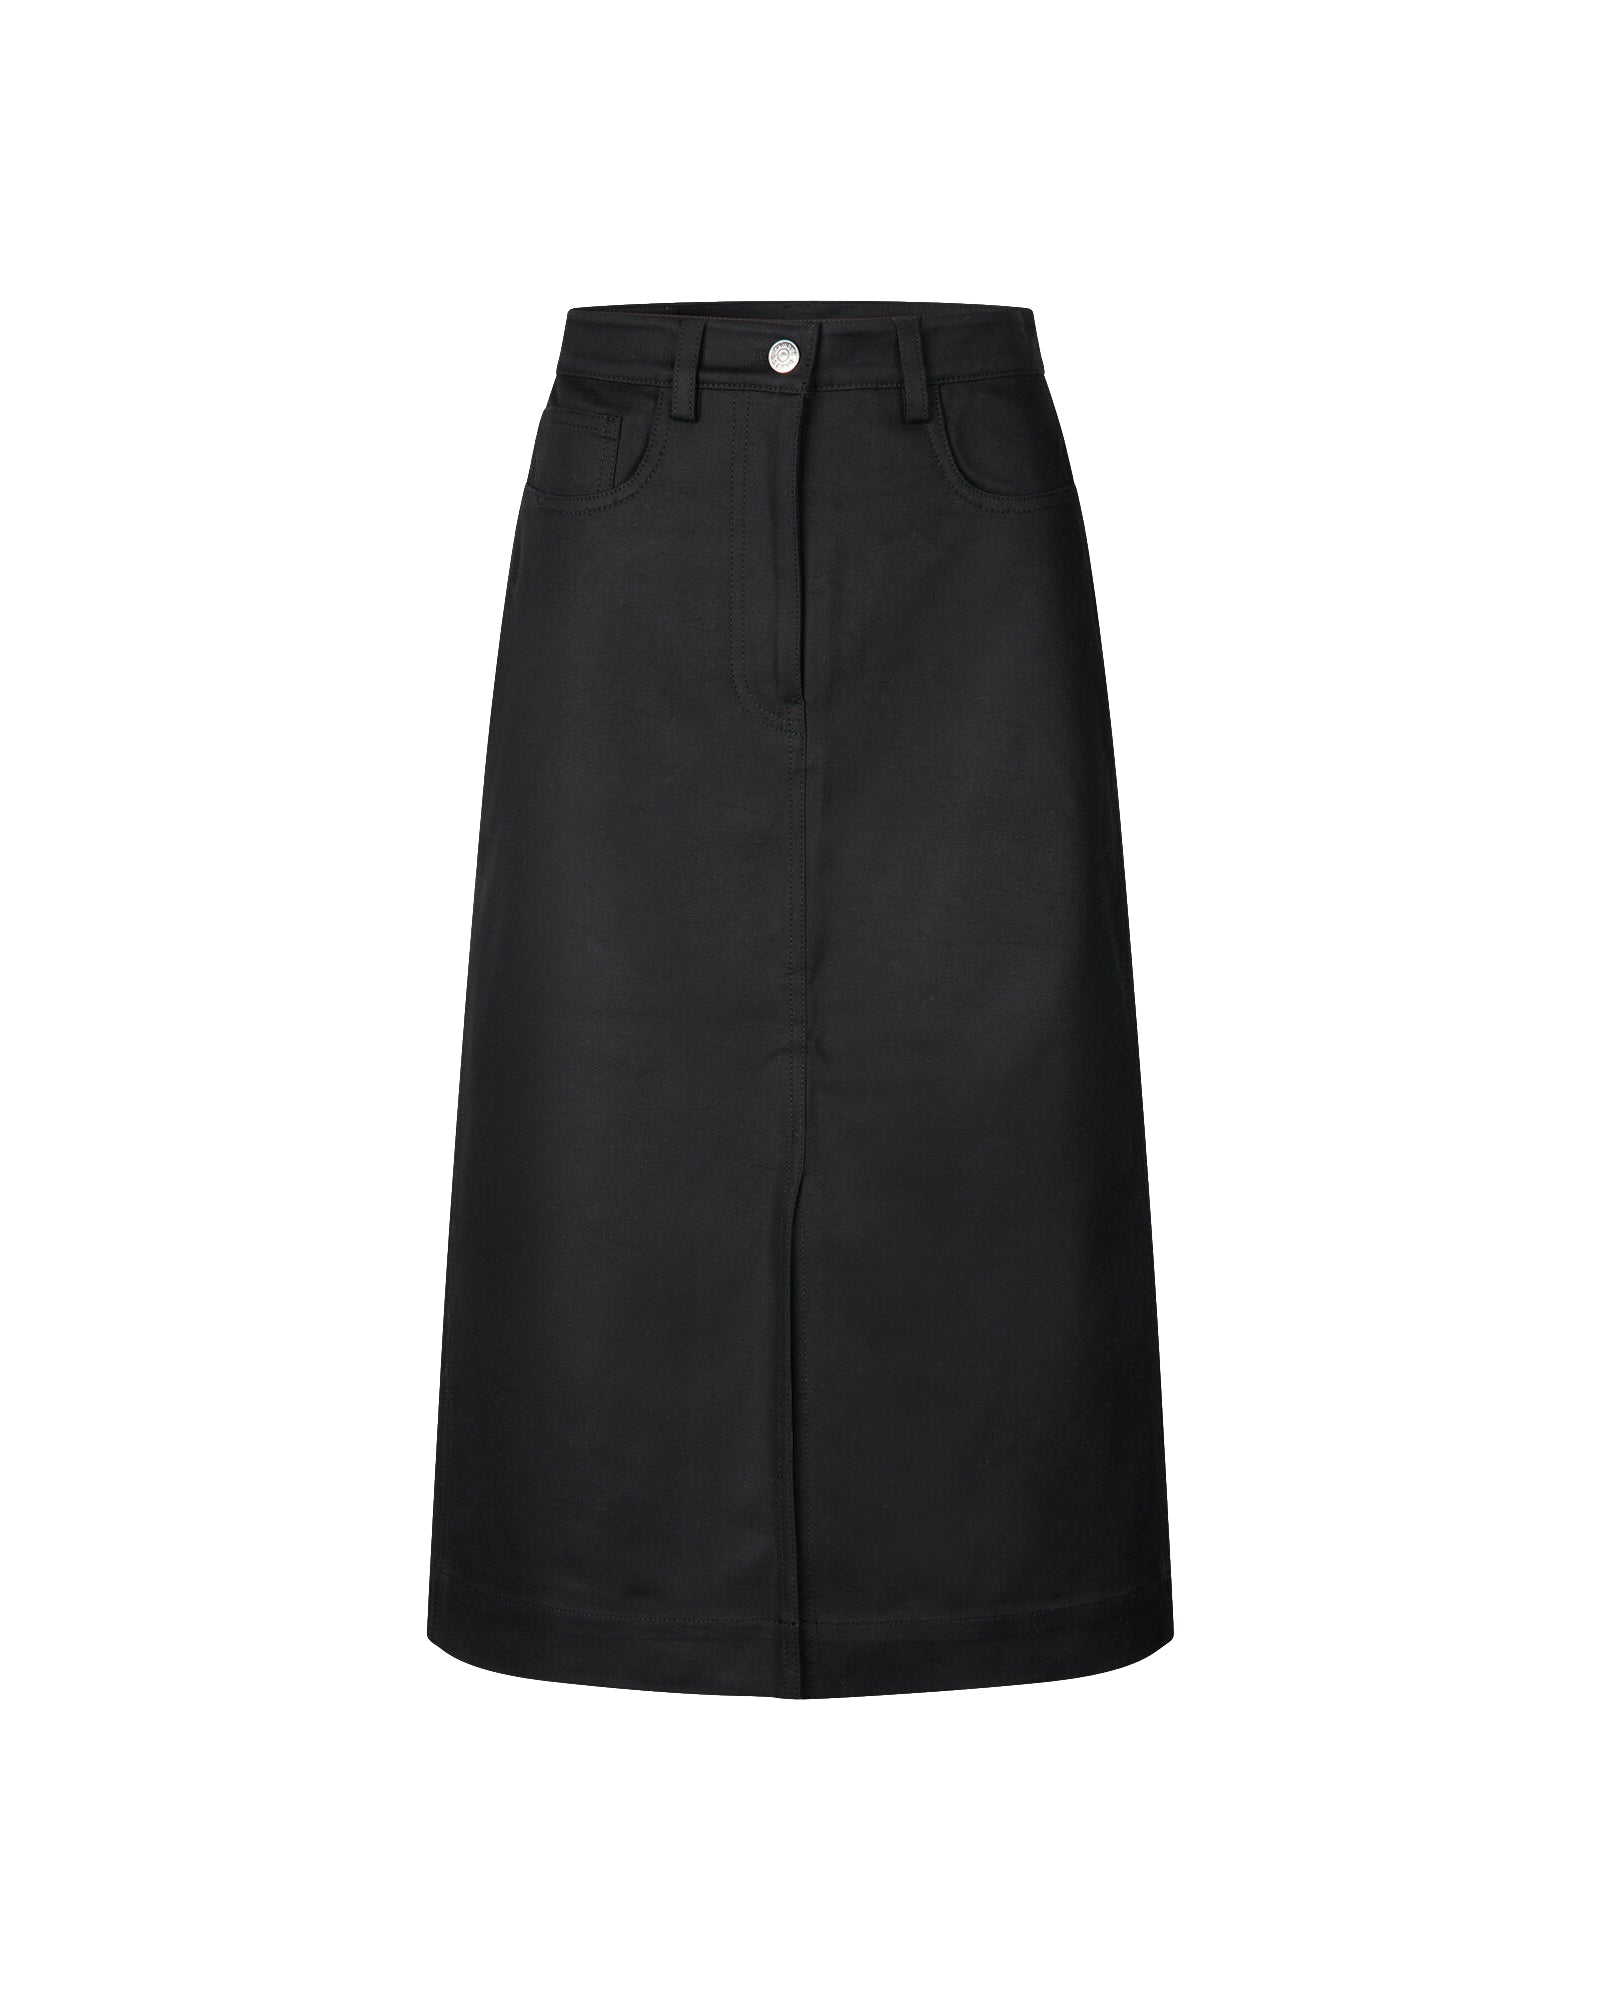 Faldilla Raya Skirt 15046 - Black